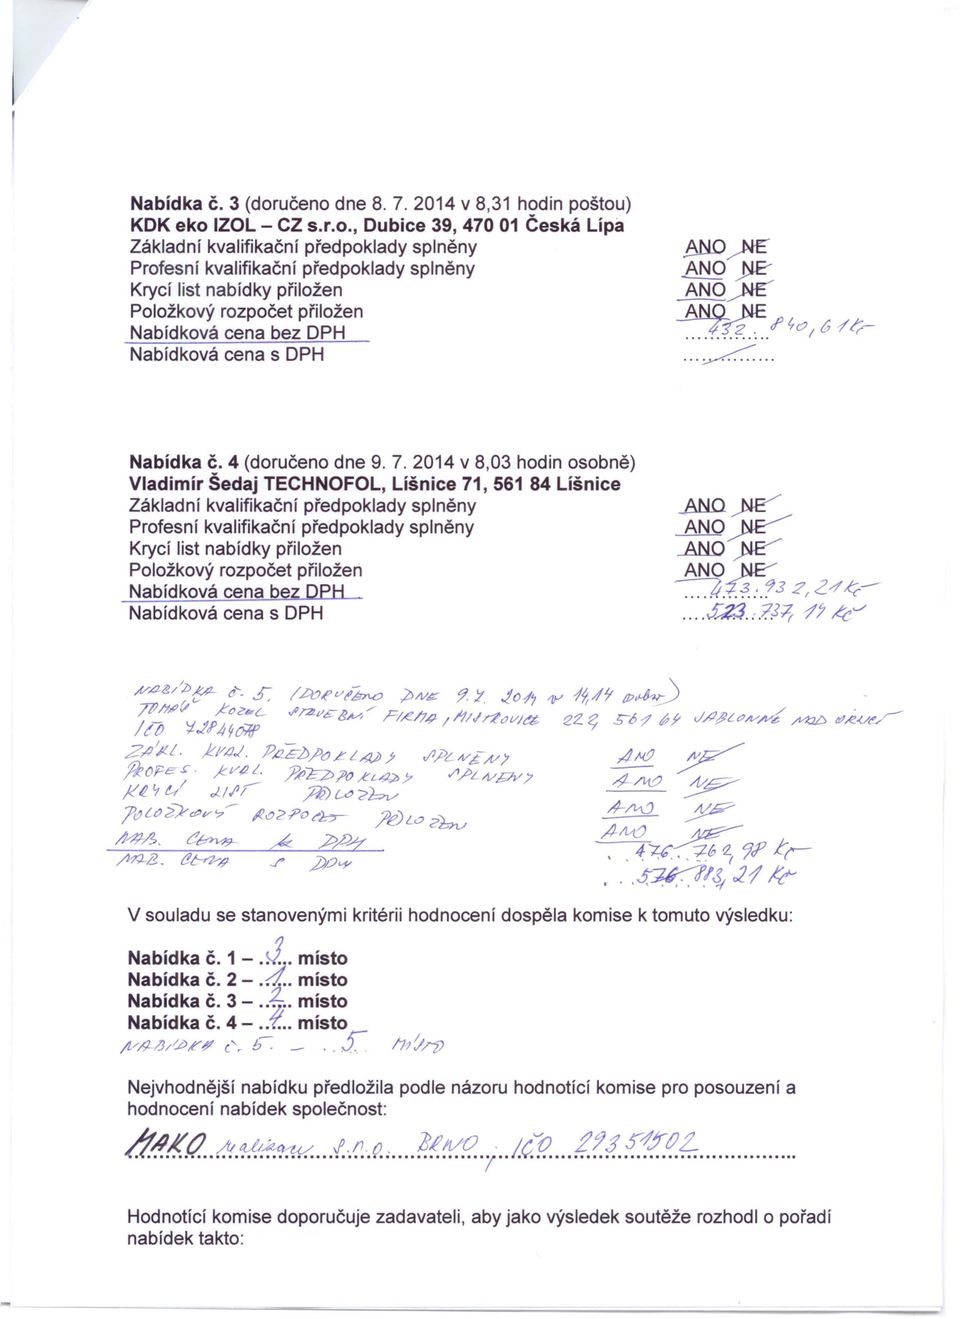 2014 v 8,03 hodin osobně) Vladimír Šedaj TECHNOFOl, Líšnice 71, 561 84 Líšnice Nabídková cena bez V souladu se stanovenými kritérii hodnocení dospěla komise k tomuto výsledku: Nabídka č, 1